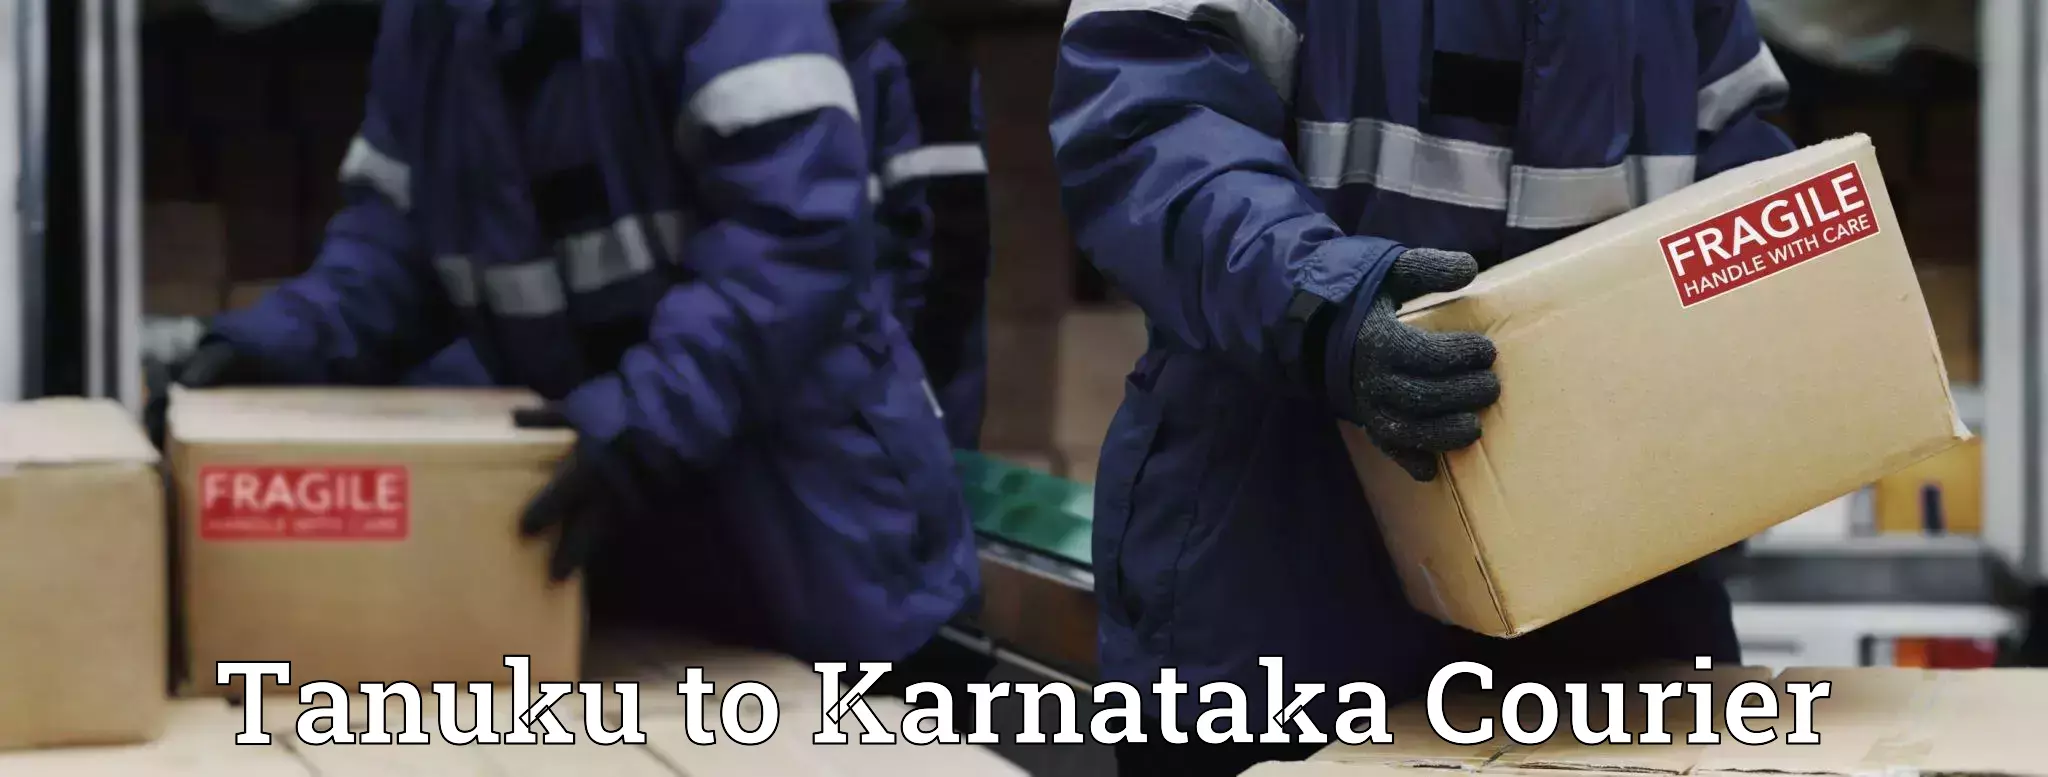 Residential courier service Tanuku to Karnataka